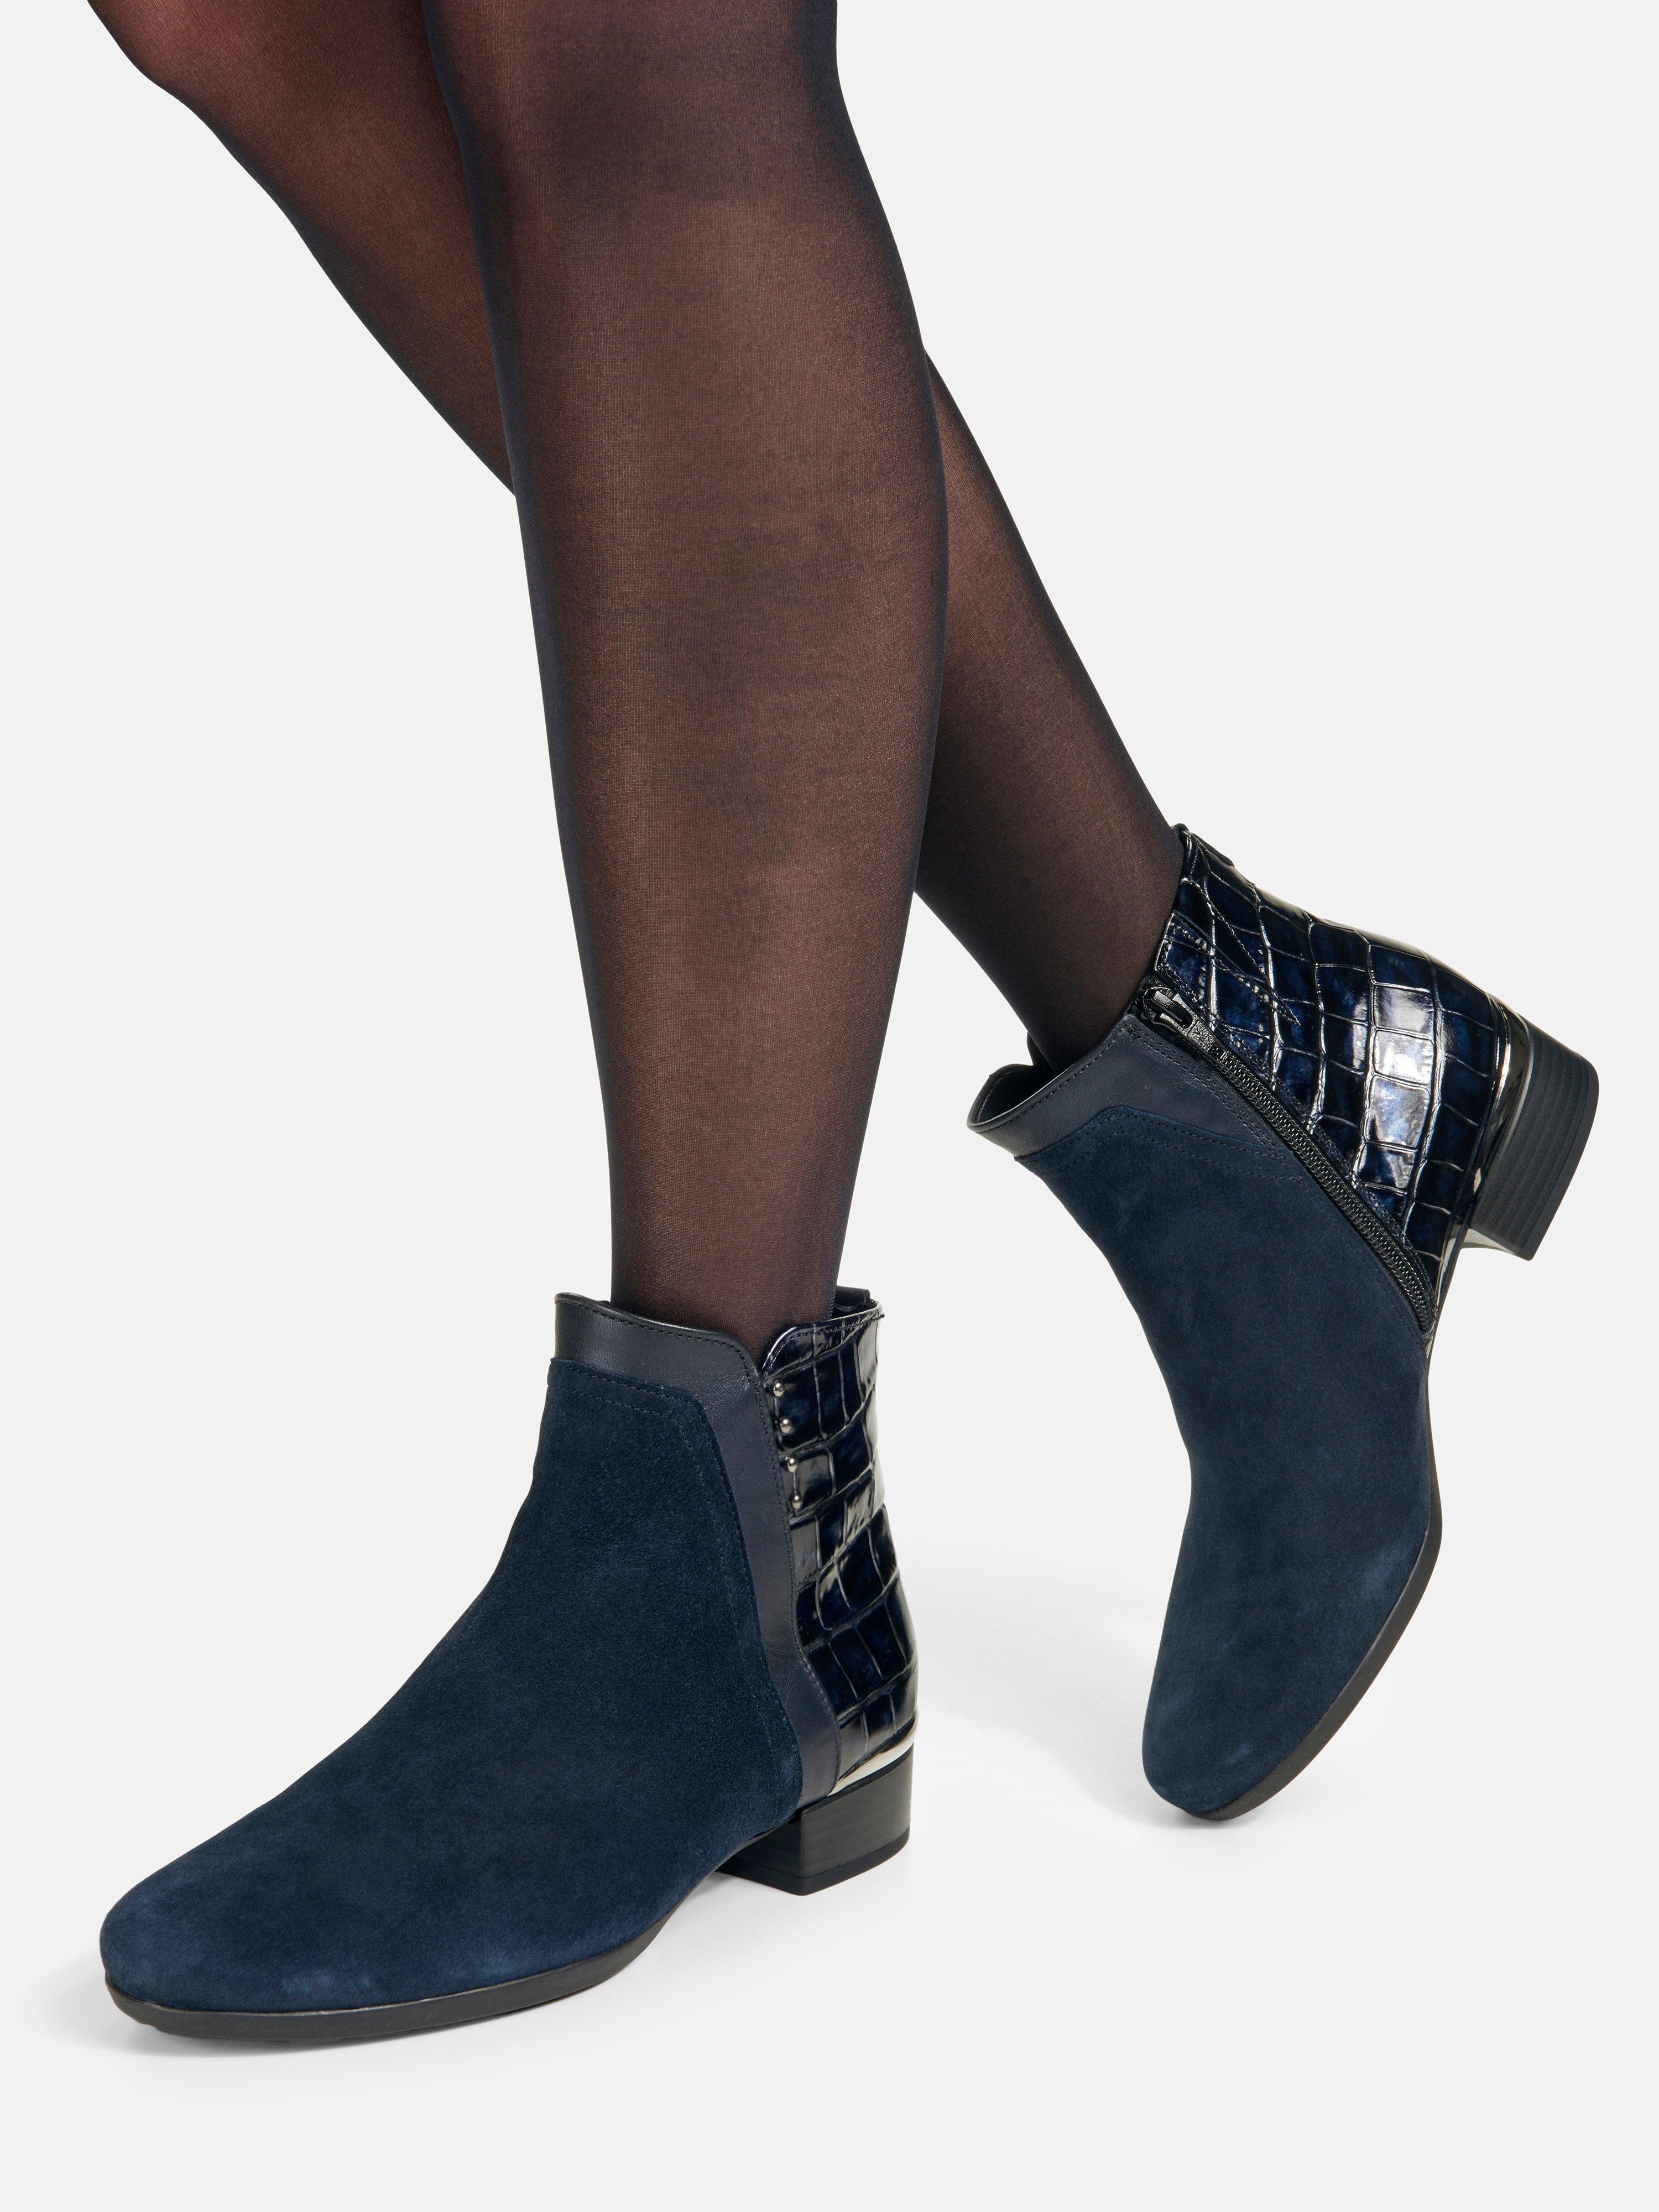 Lys Ønske Trække på Gabor Comfort - Ankle boots in kidskin suede and calf nappa leathe - dark  blue